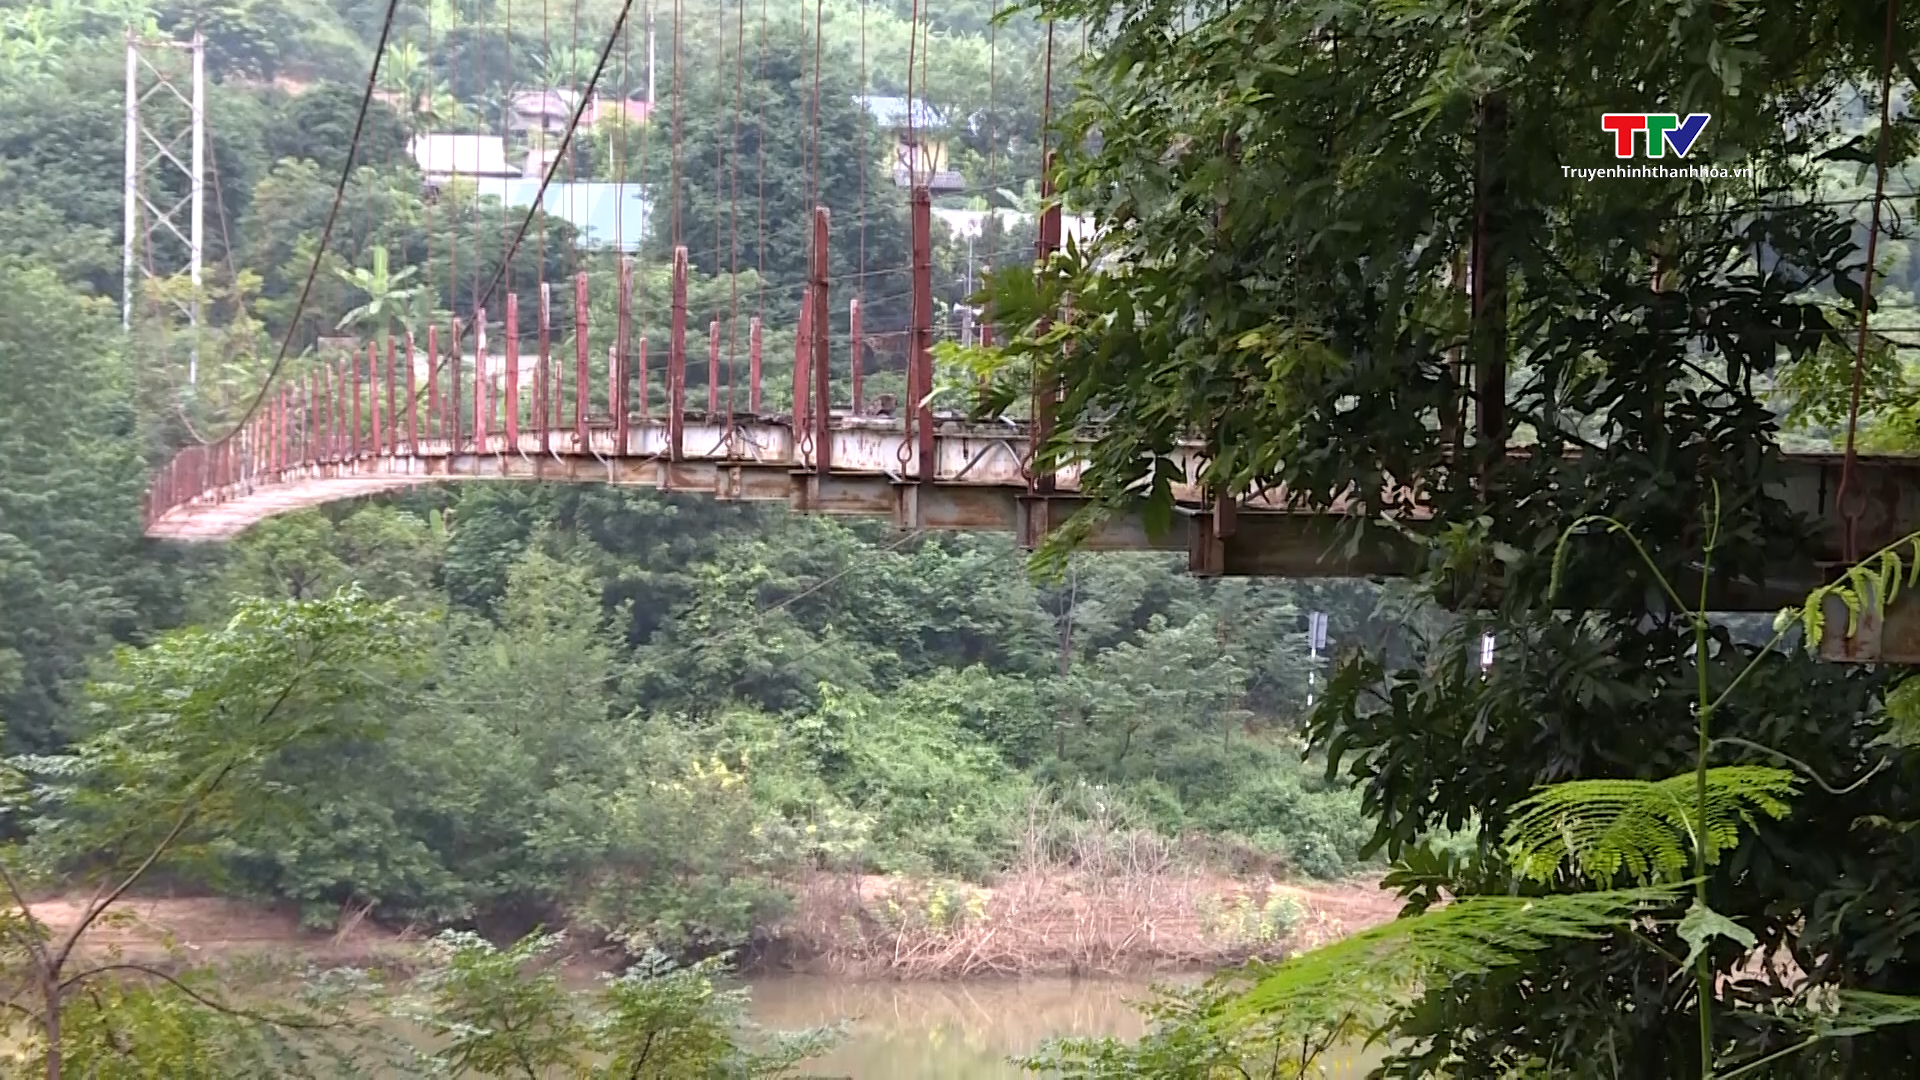 Thiếu kinh phí, 2 cầu treo hư hỏng trên địa bàn huyện Mường Lát chưa thể tháo dỡ- Ảnh 3.